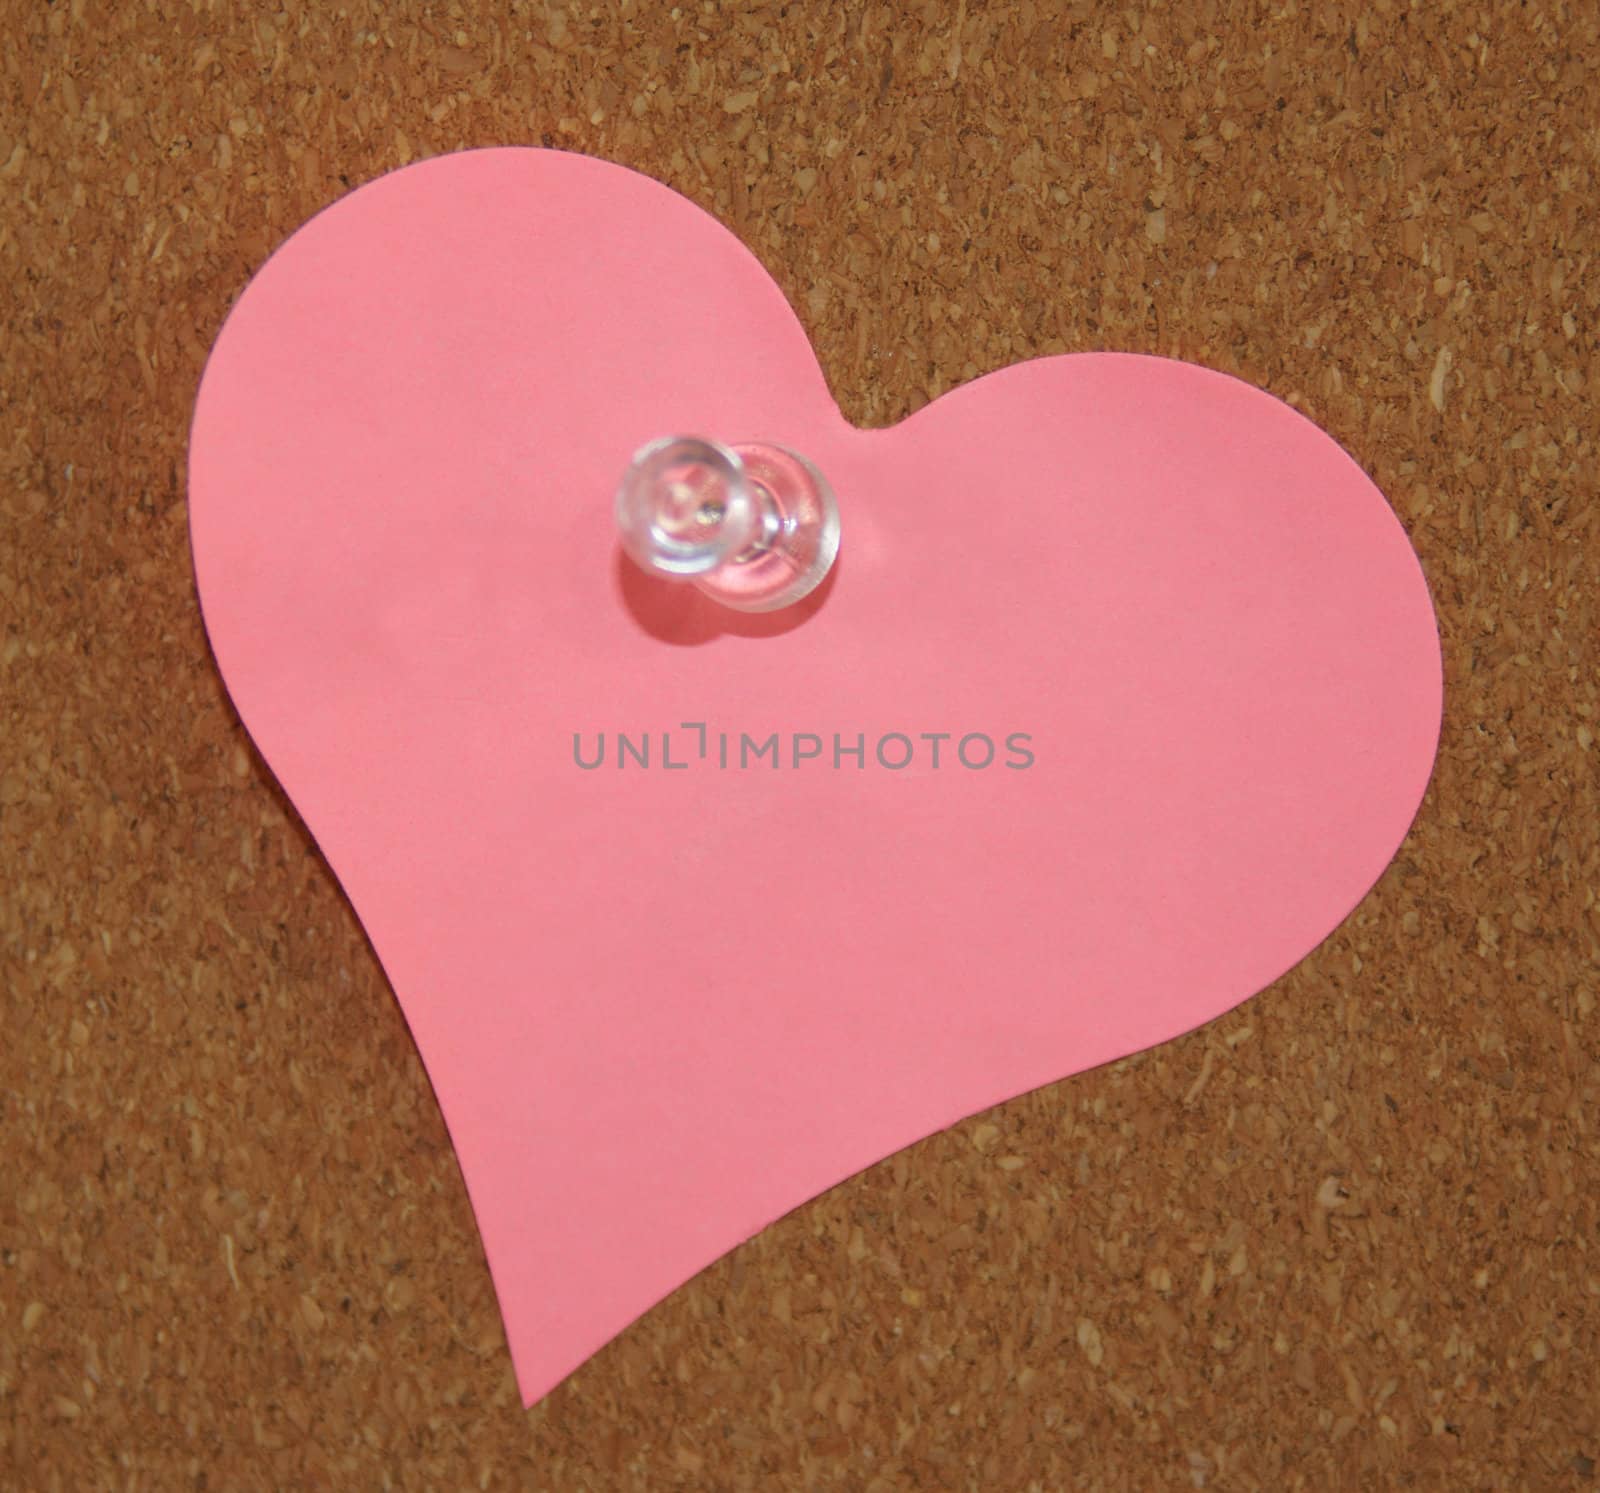 A heart shade sticker is pinned on a cork board